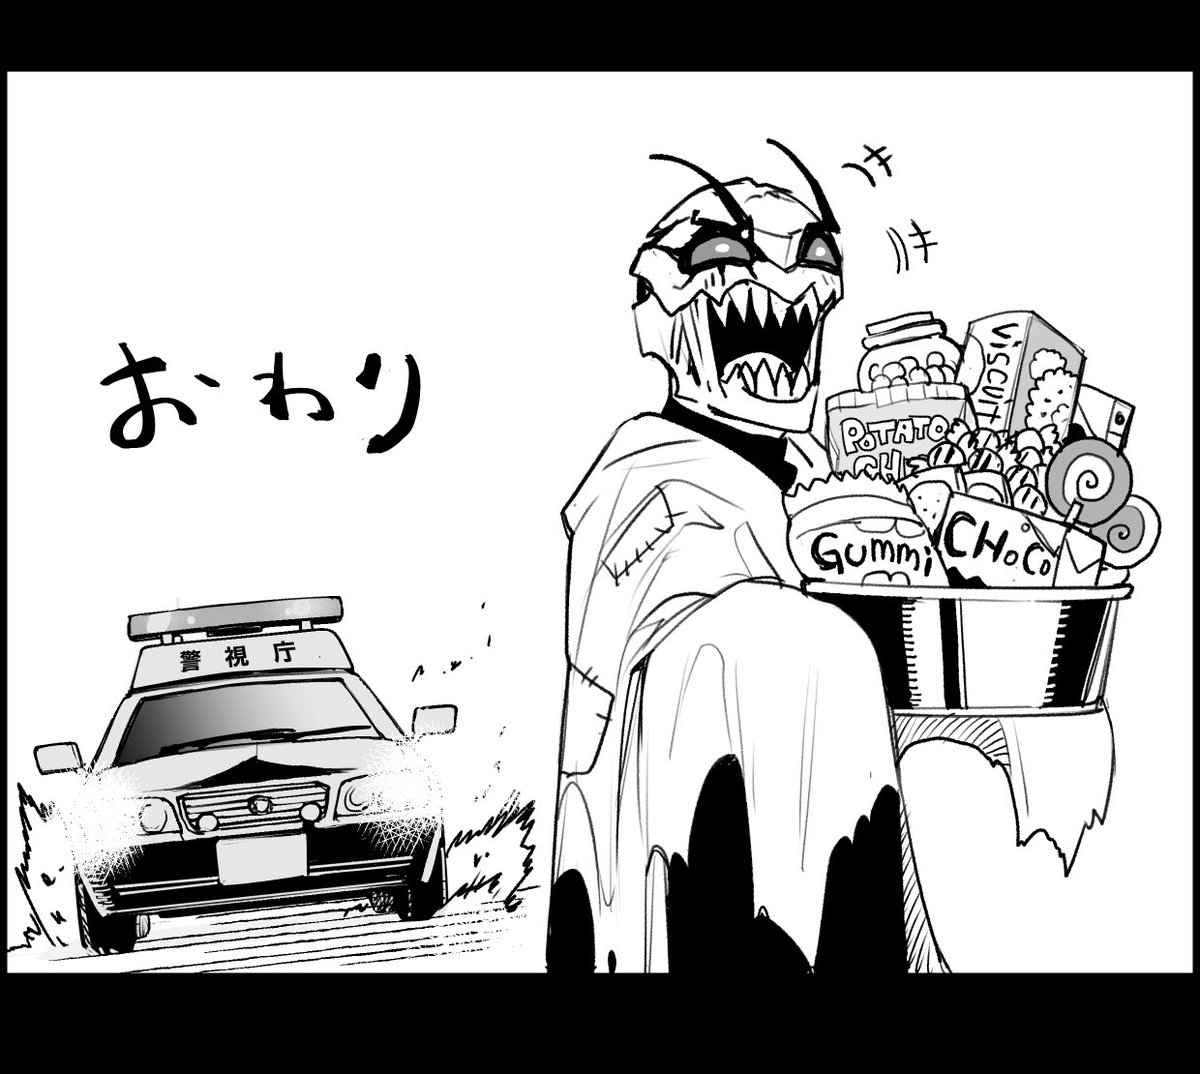 去年描いたハロウィン漫画👻
#東京怪人ラプソディ 